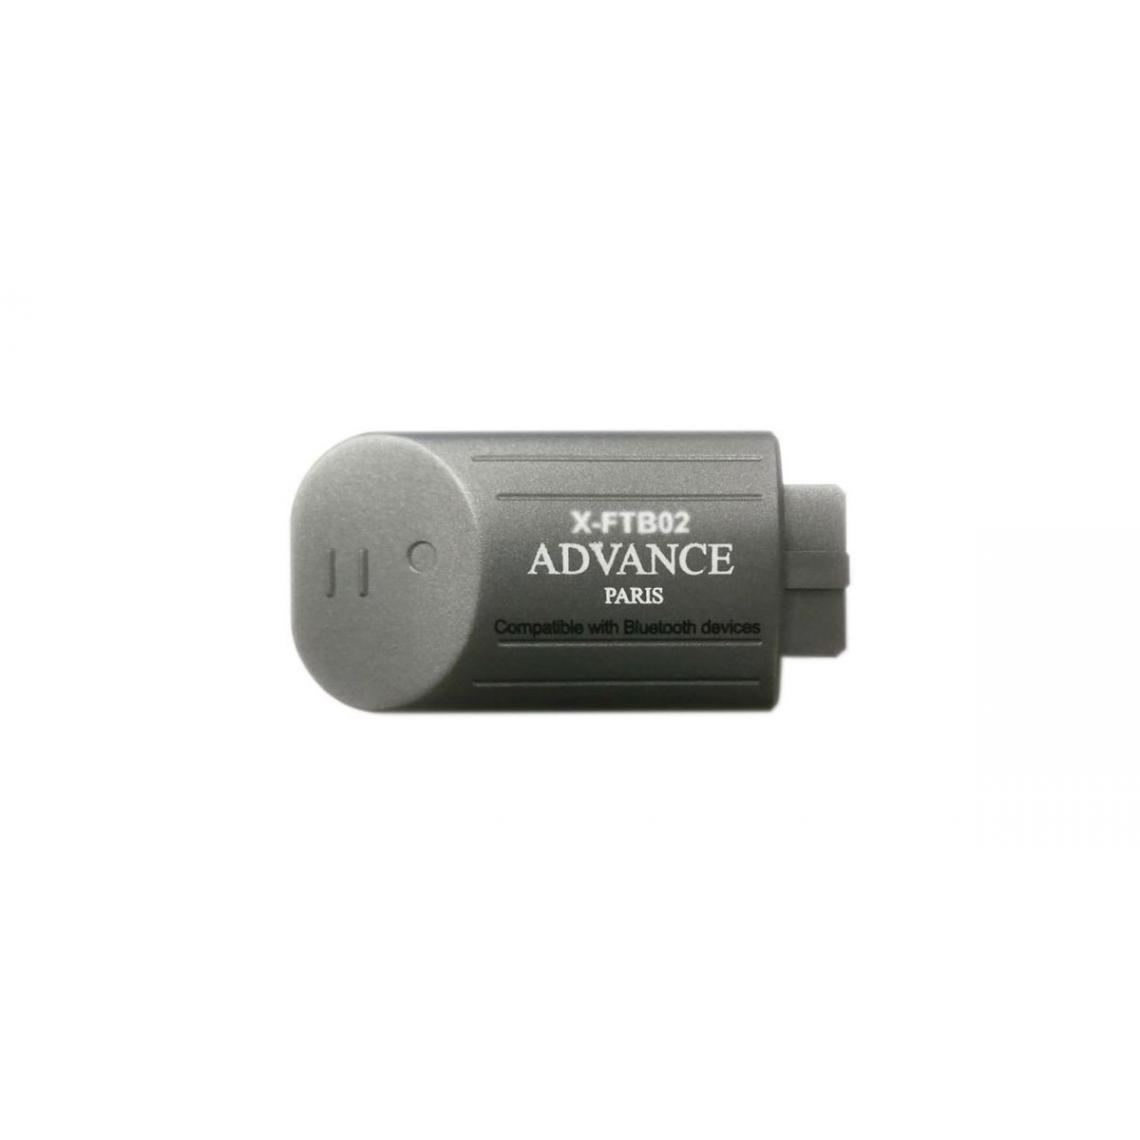 Advance - Advance Paris X-FTB02 - Récepteur Bluetooth - Passerelle Multimédia